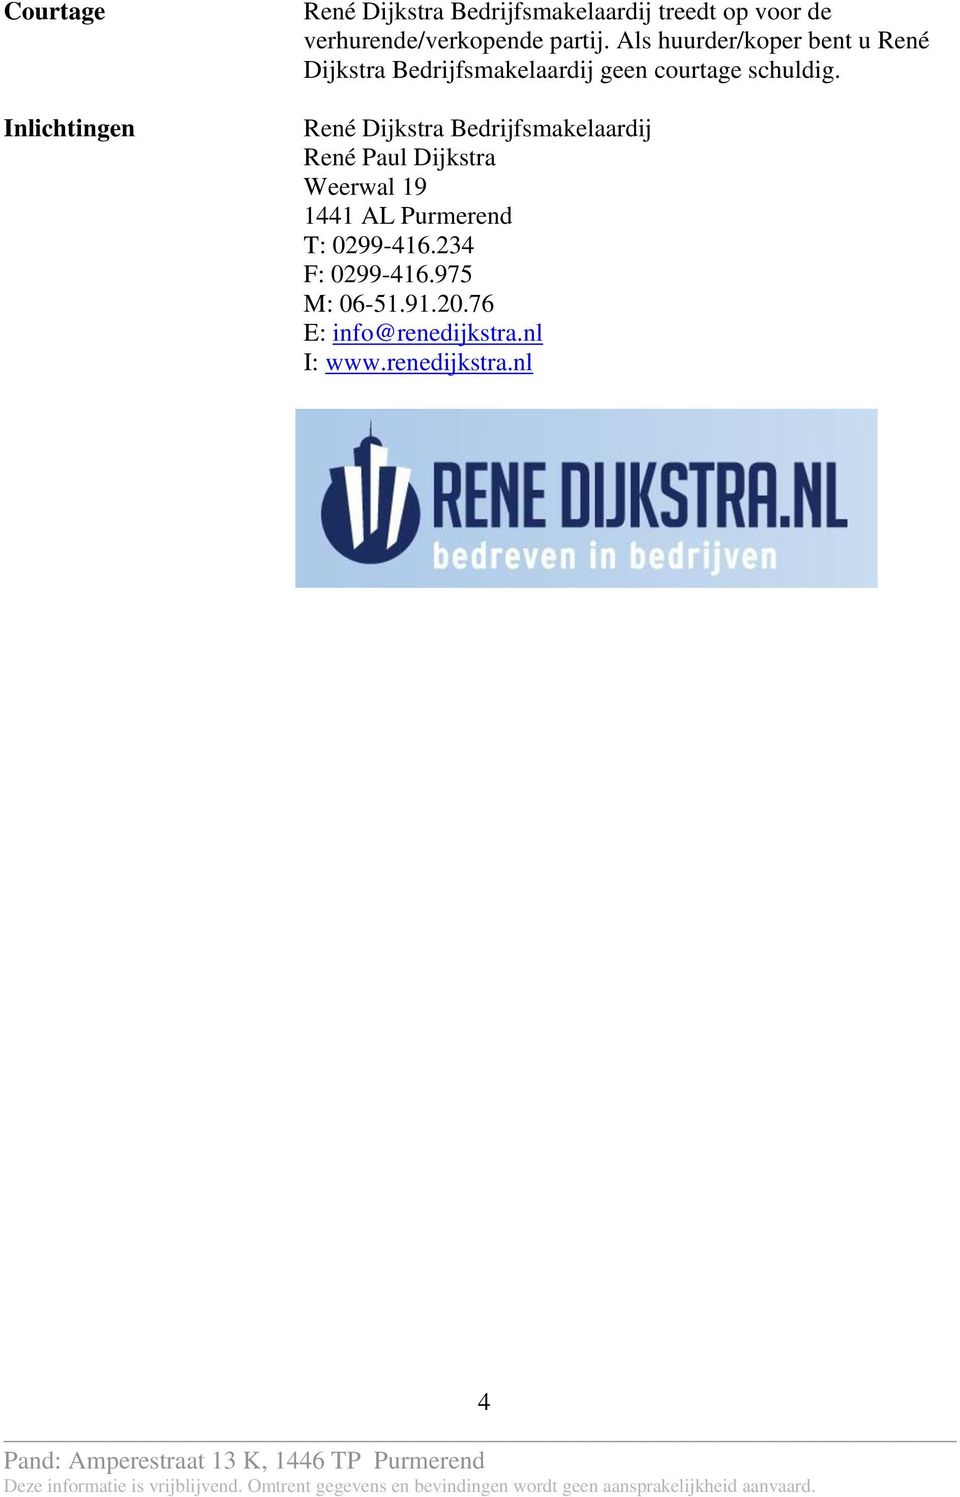 Als huurder/koper bent u René Dijkstra Bedrijfsmakelaardij geen courtage schuldig.